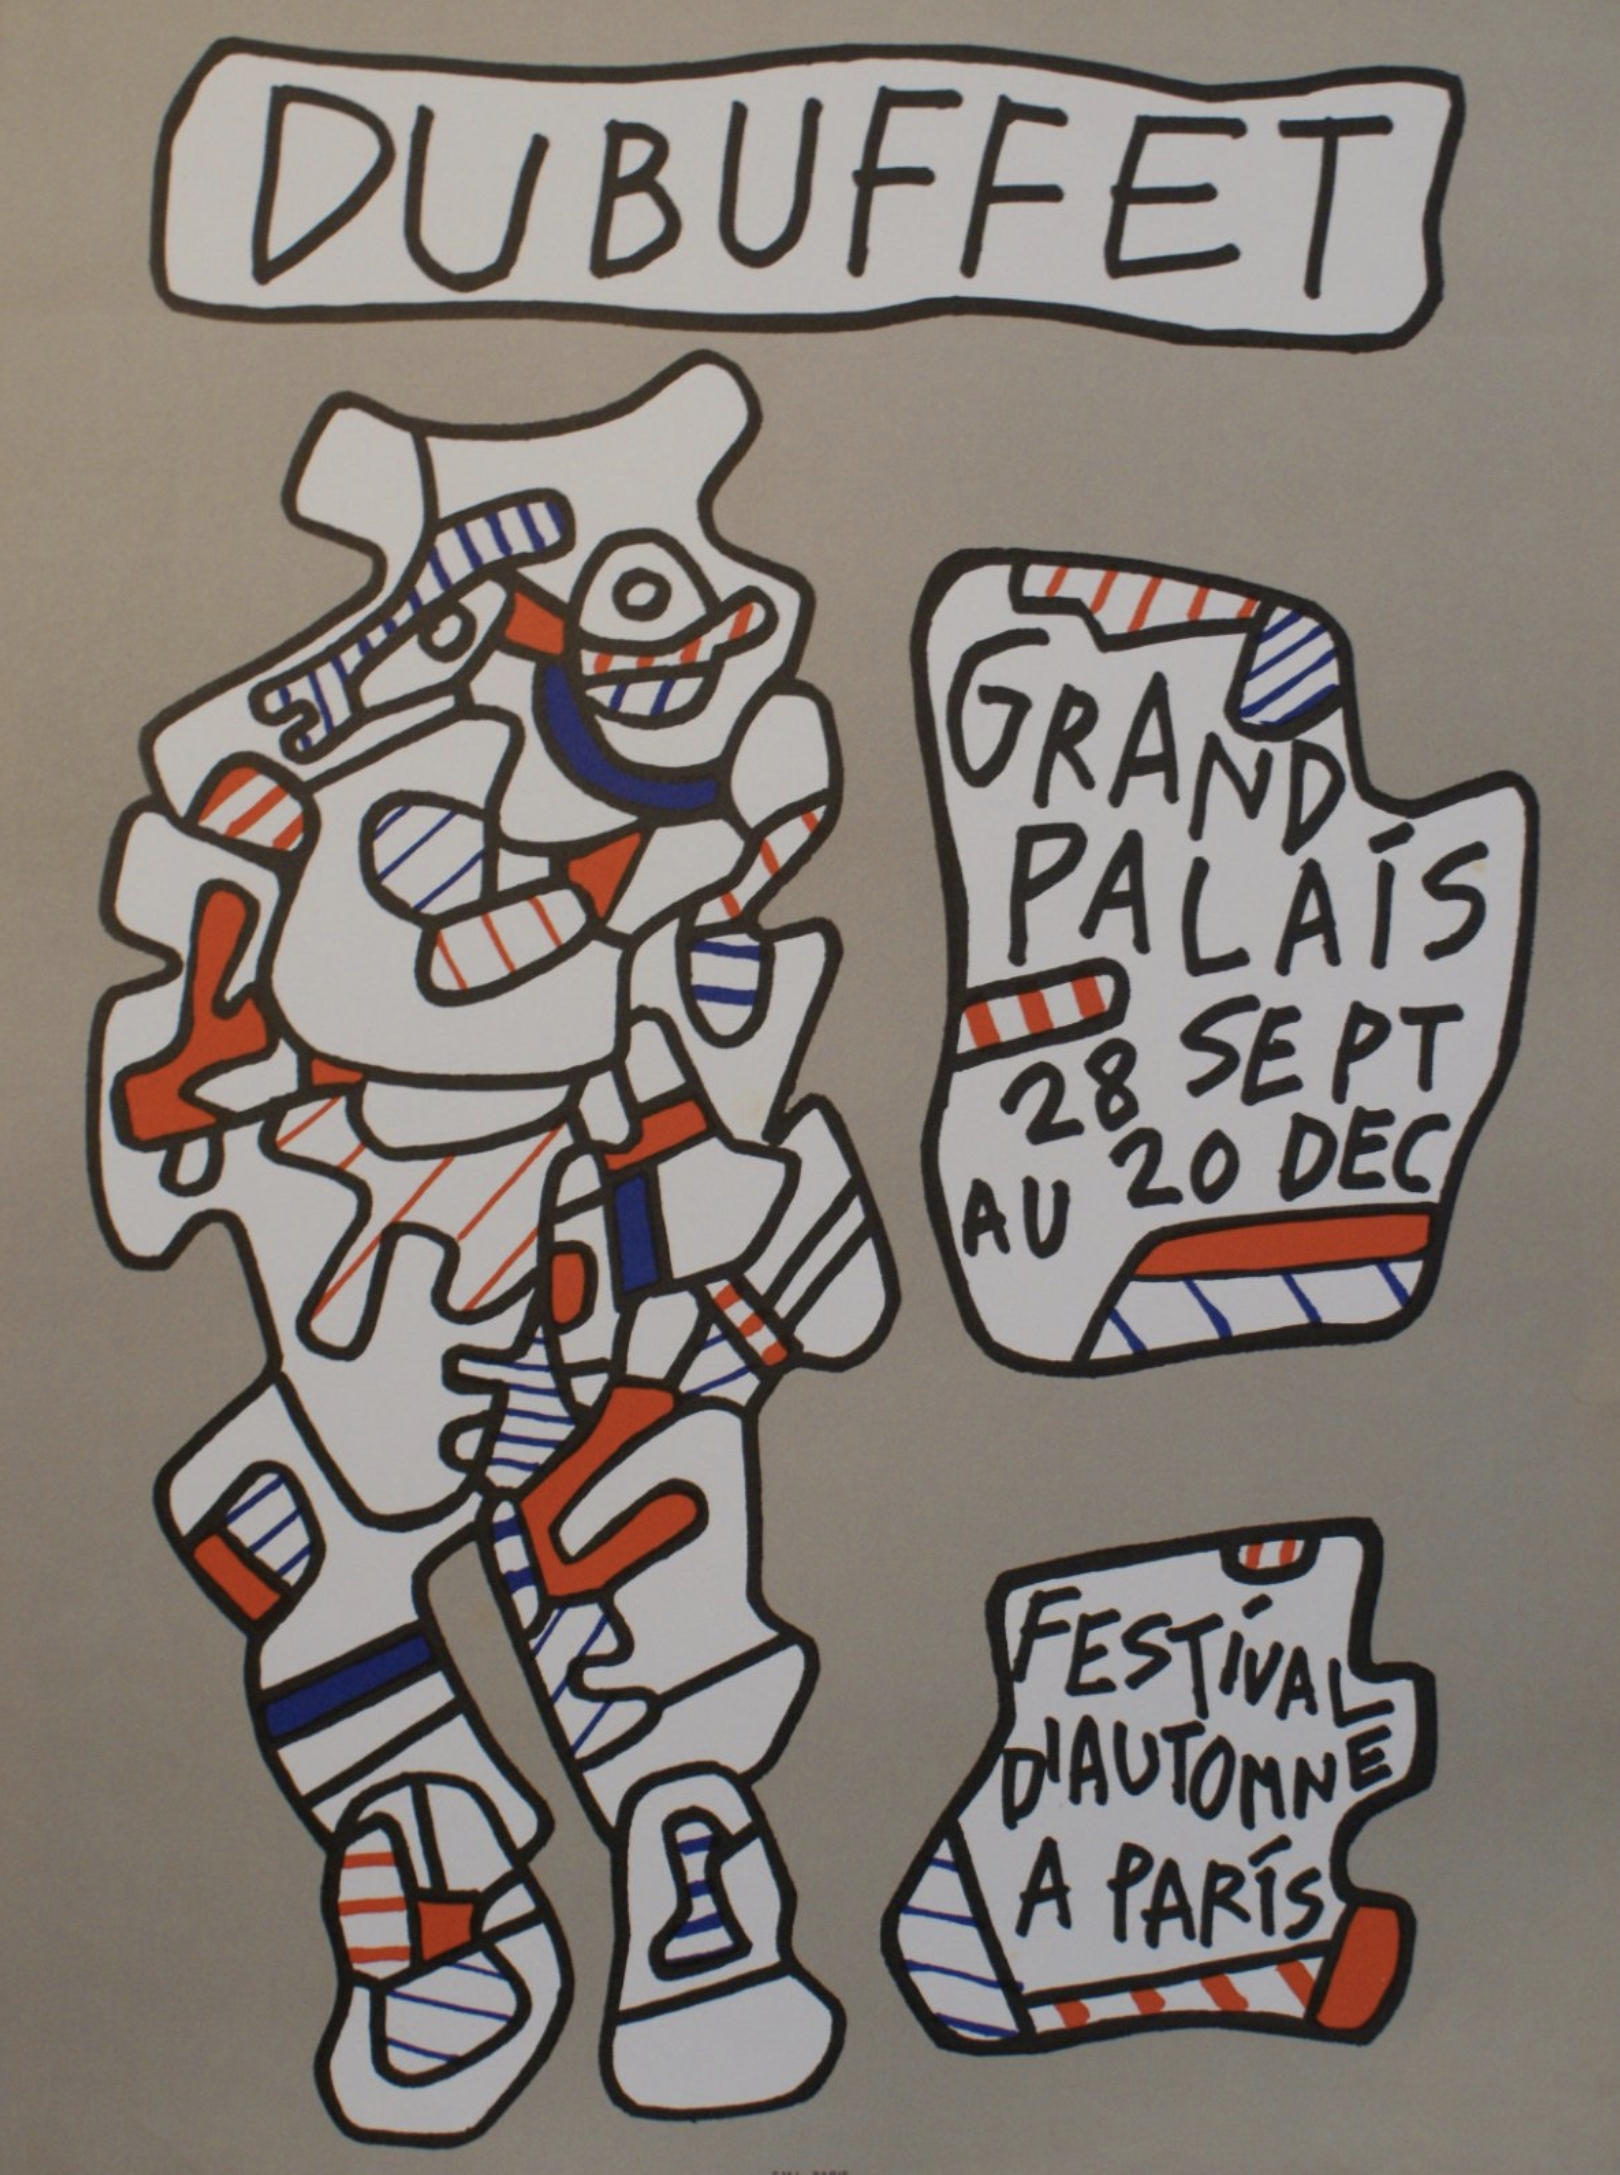 FESTIVAL D’AUTOMNE A PARIS Original Vintage Poster